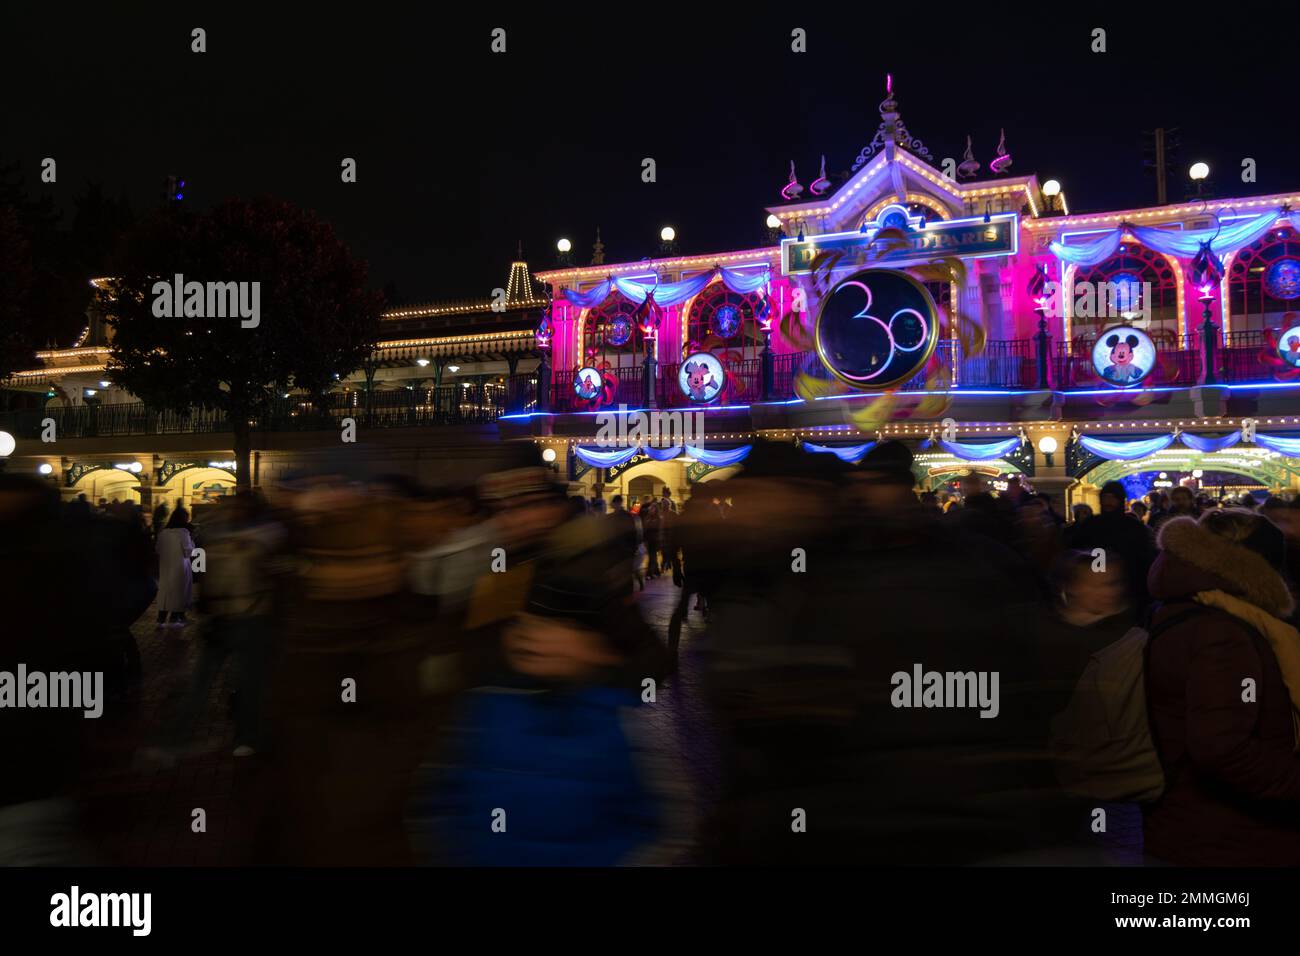 Disneyland Paris 30 anni di illuminazione. Ingresso al parco delle attrazioni Disney con 30 anni di luci commemorative. Foto Stock